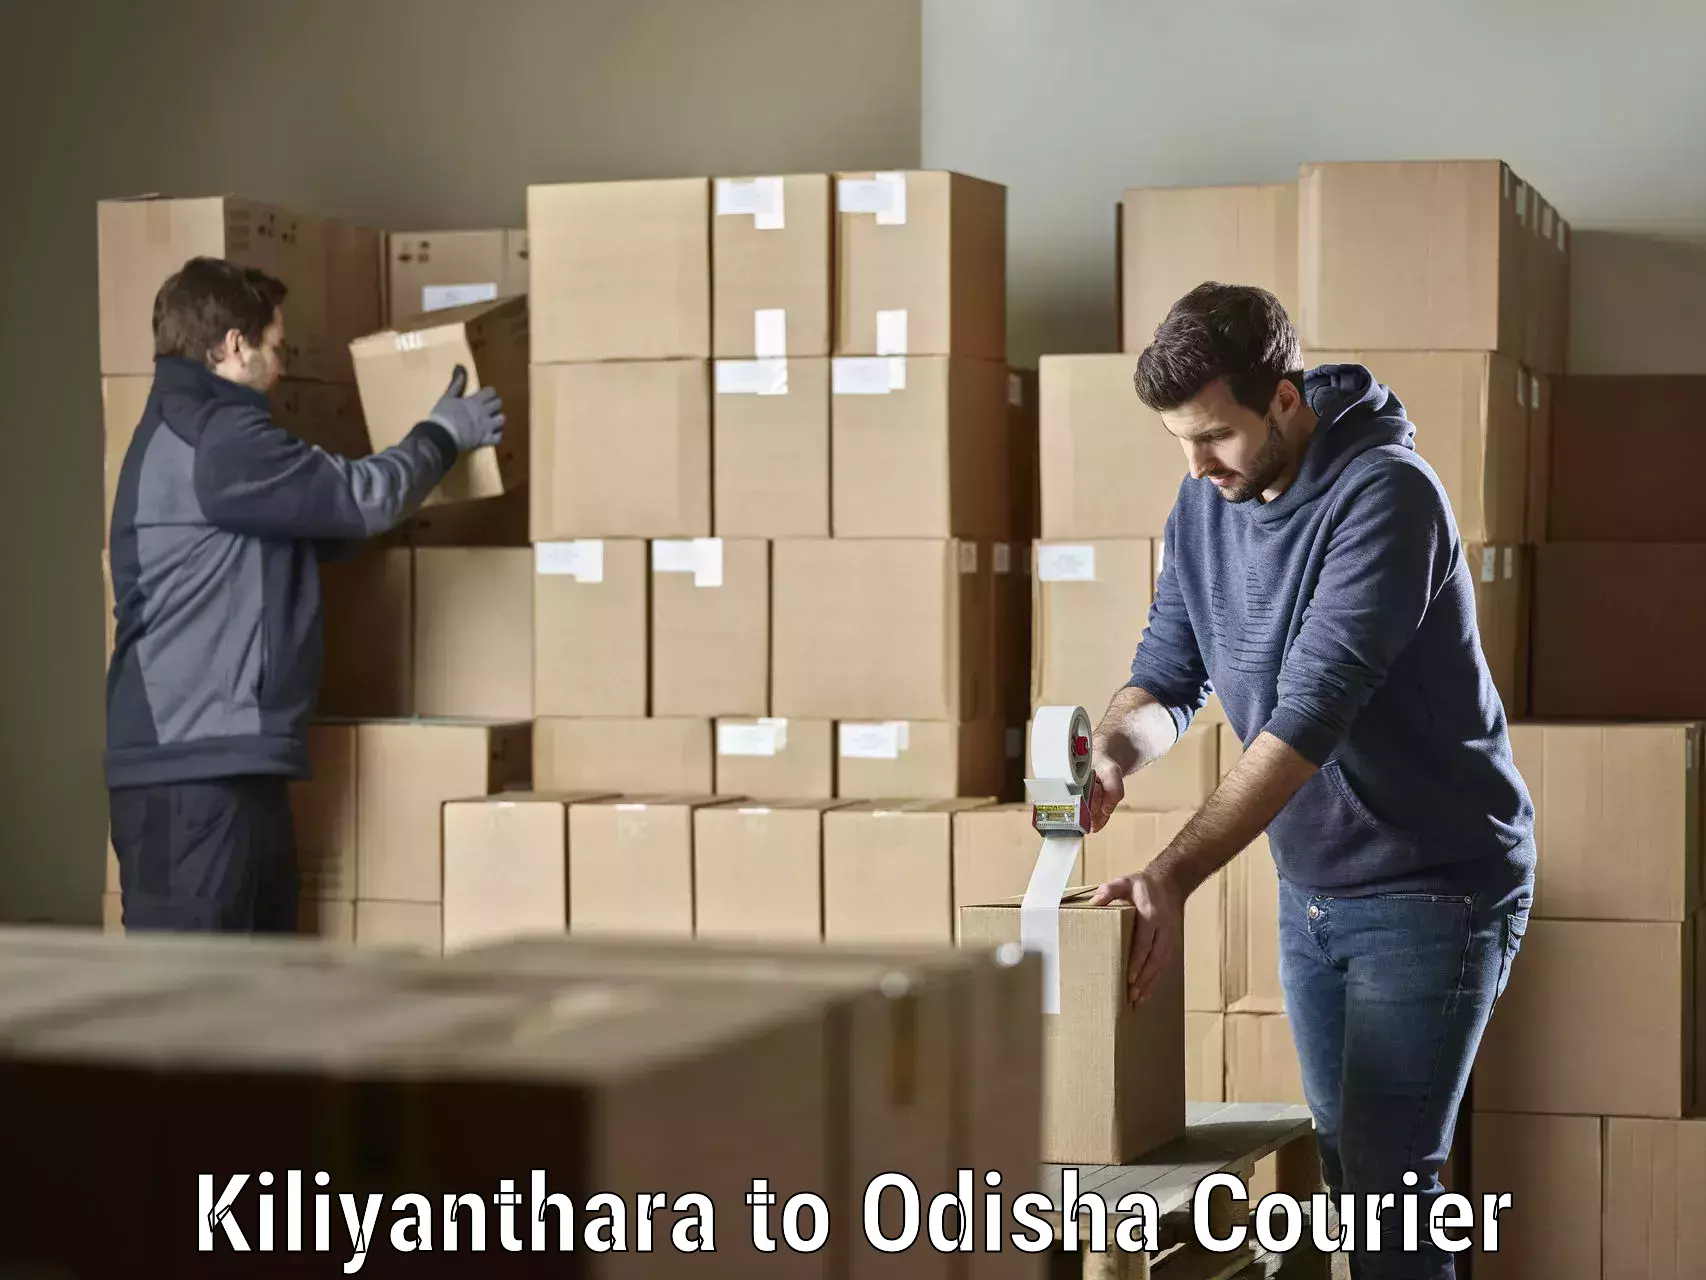 Urban courier service Kiliyanthara to Kalimela